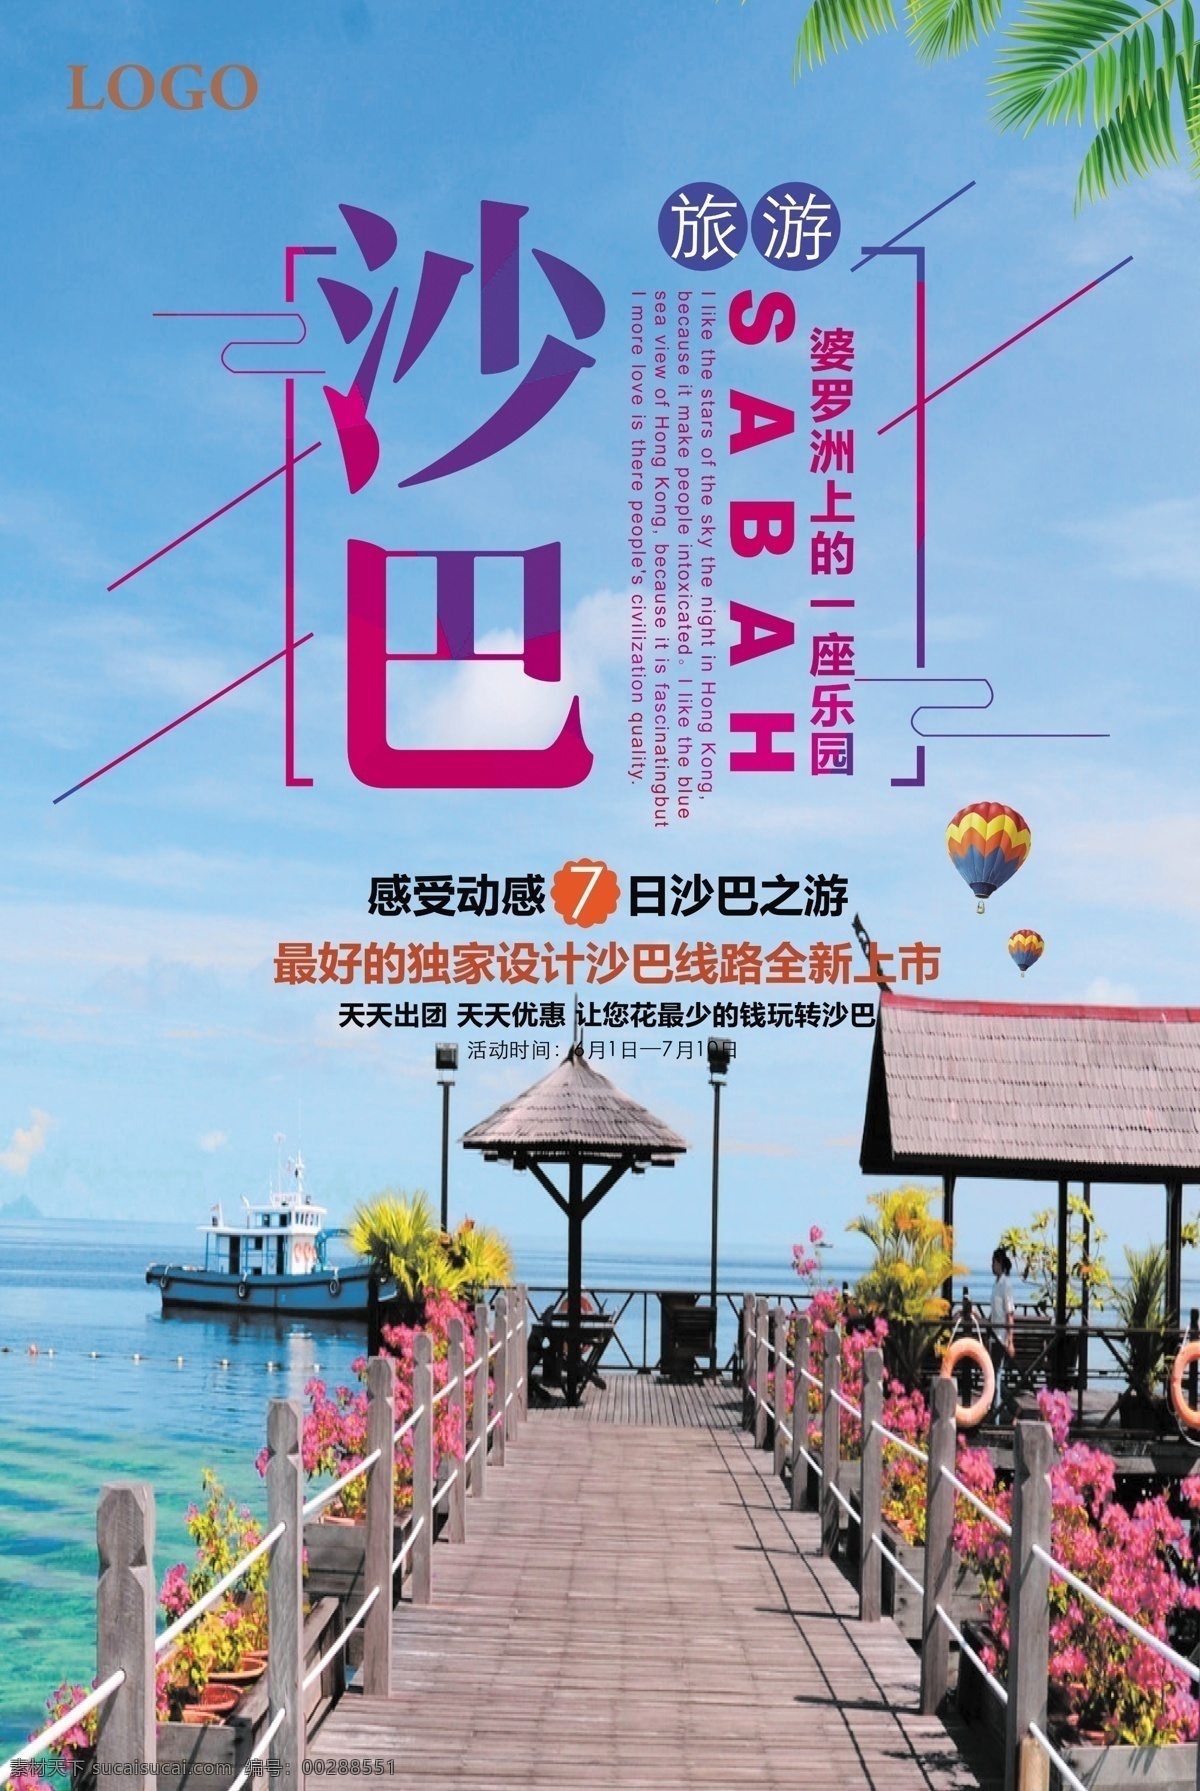 最新 流行 沙巴 旅游 海报 展板 海边 浪漫 清新 蓝天 沙巴旅游宣传 马来西亚旅游 沙巴洲 旅游模板 旅行社 自由行 海水 海风